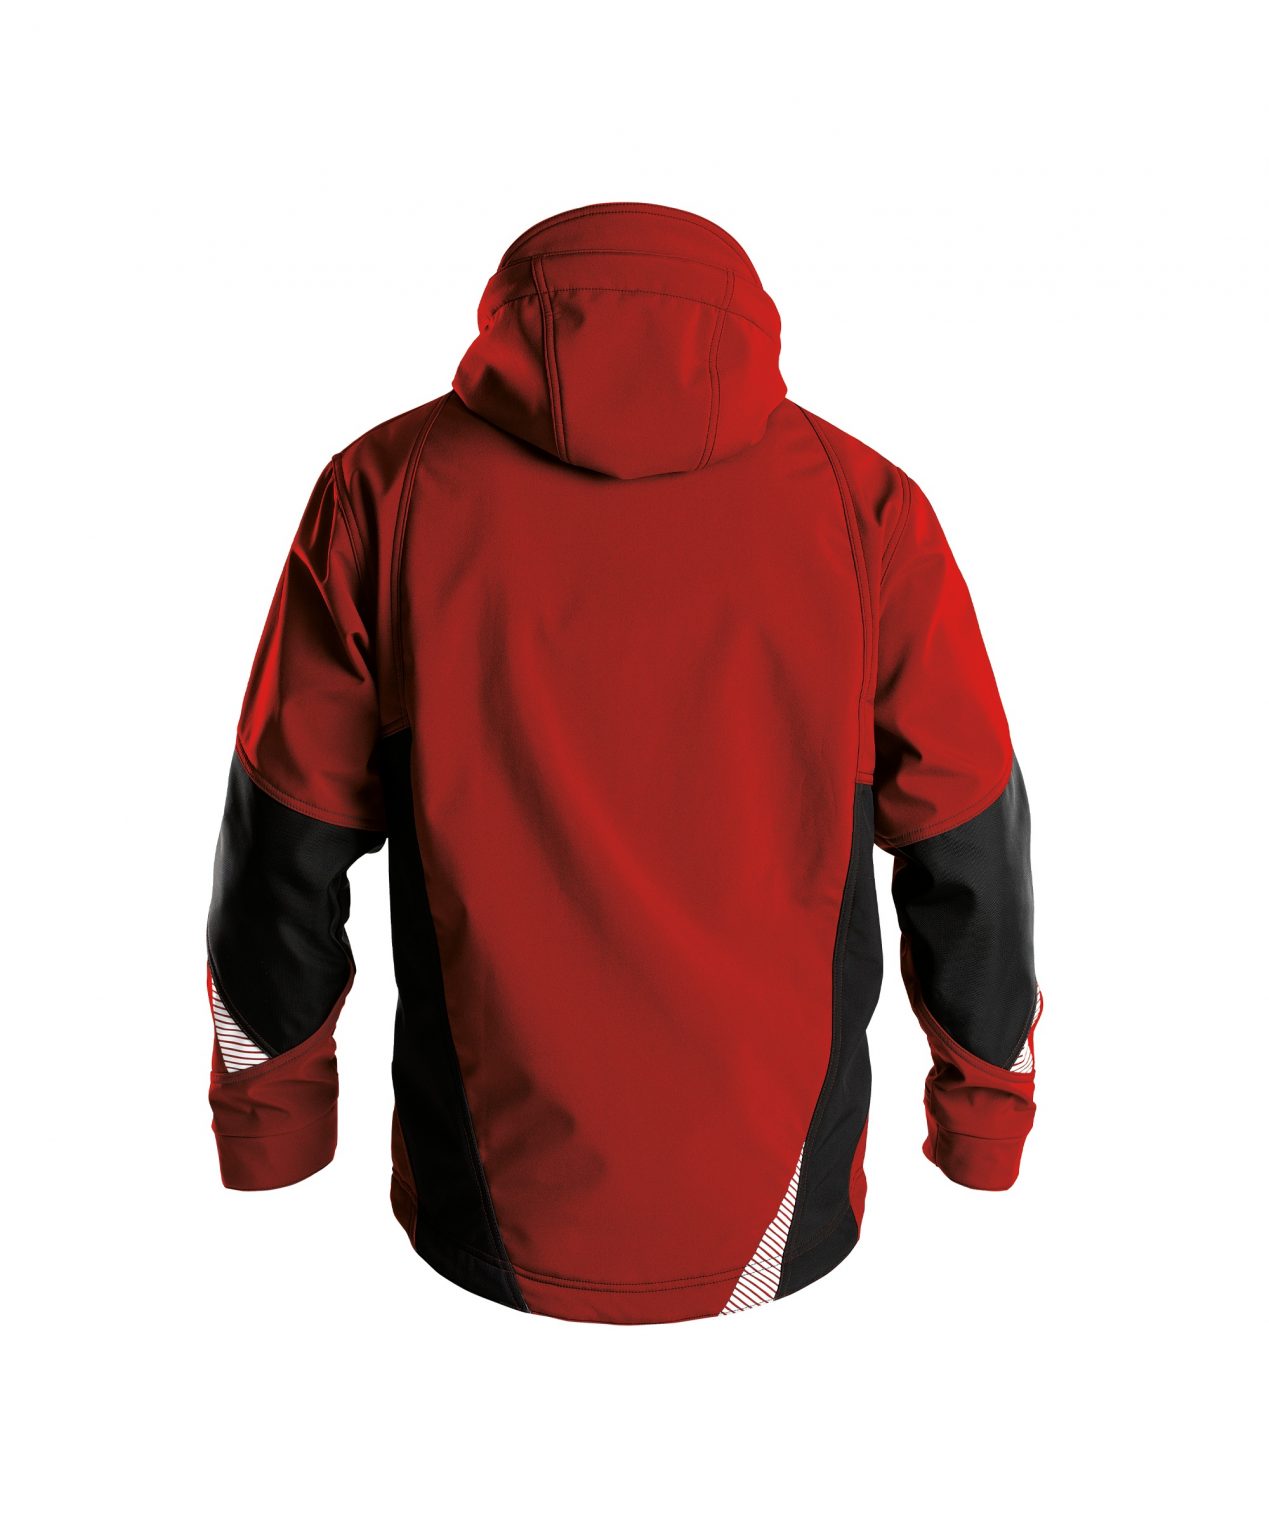 gravity softshell jacket red black back